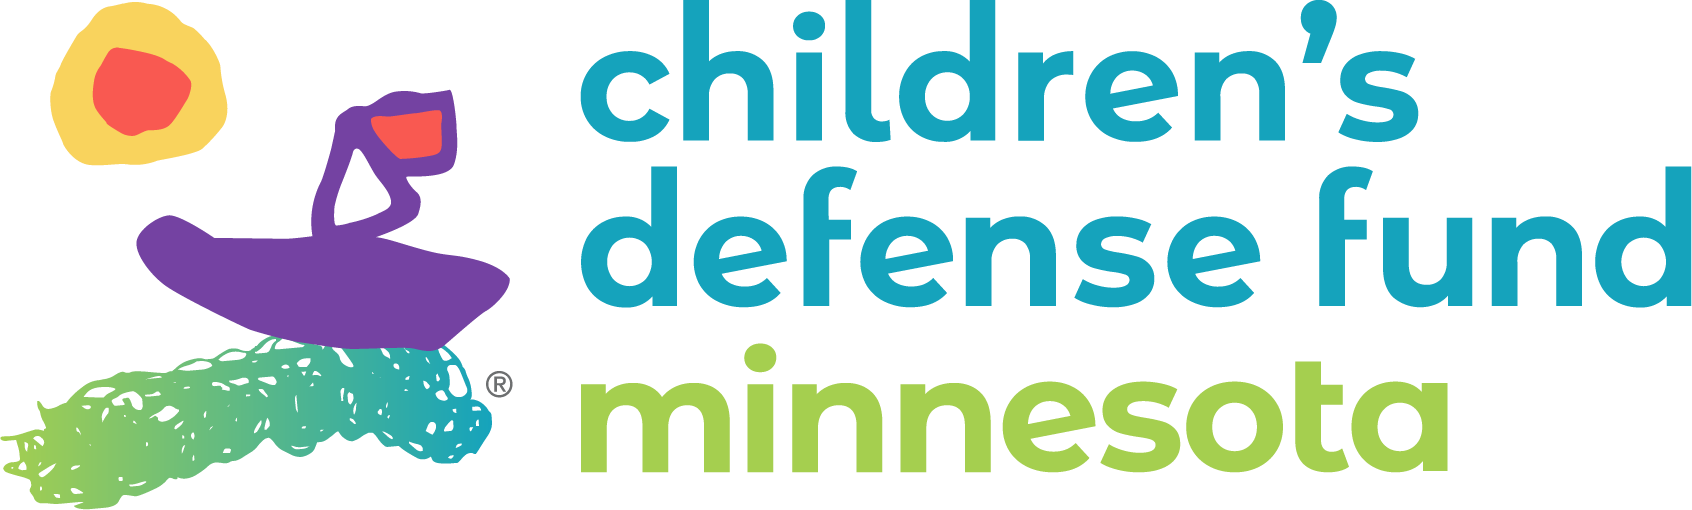 Children's Defense Fund logo